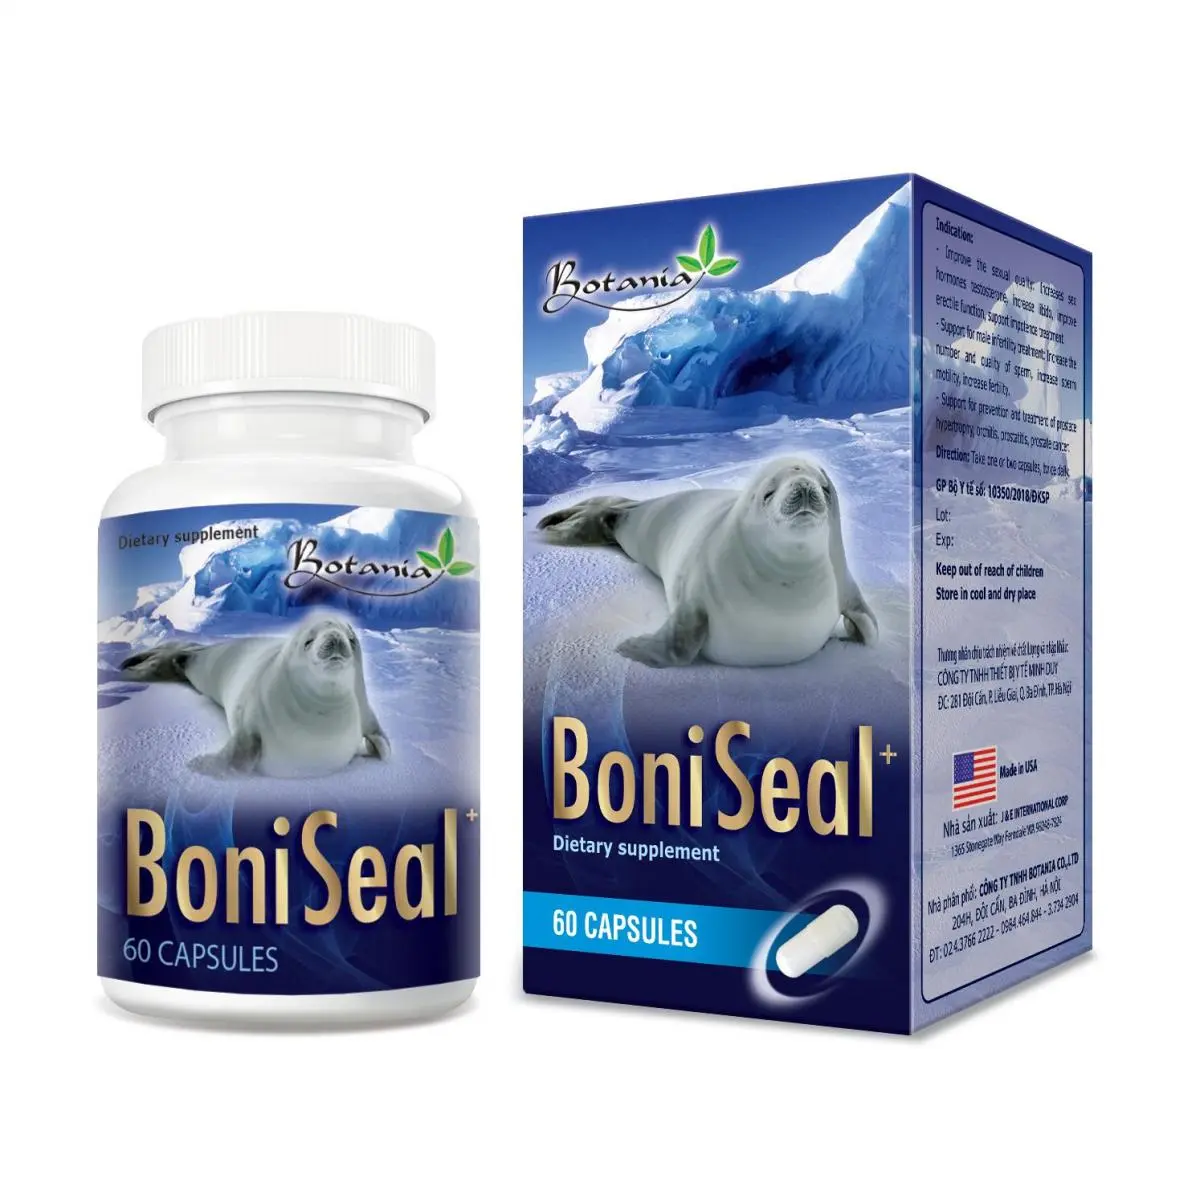 BoniSeal+ (Made in USA) - Giải pháp giúp tăng cường sinh lý nam giới không thể bỏ qua